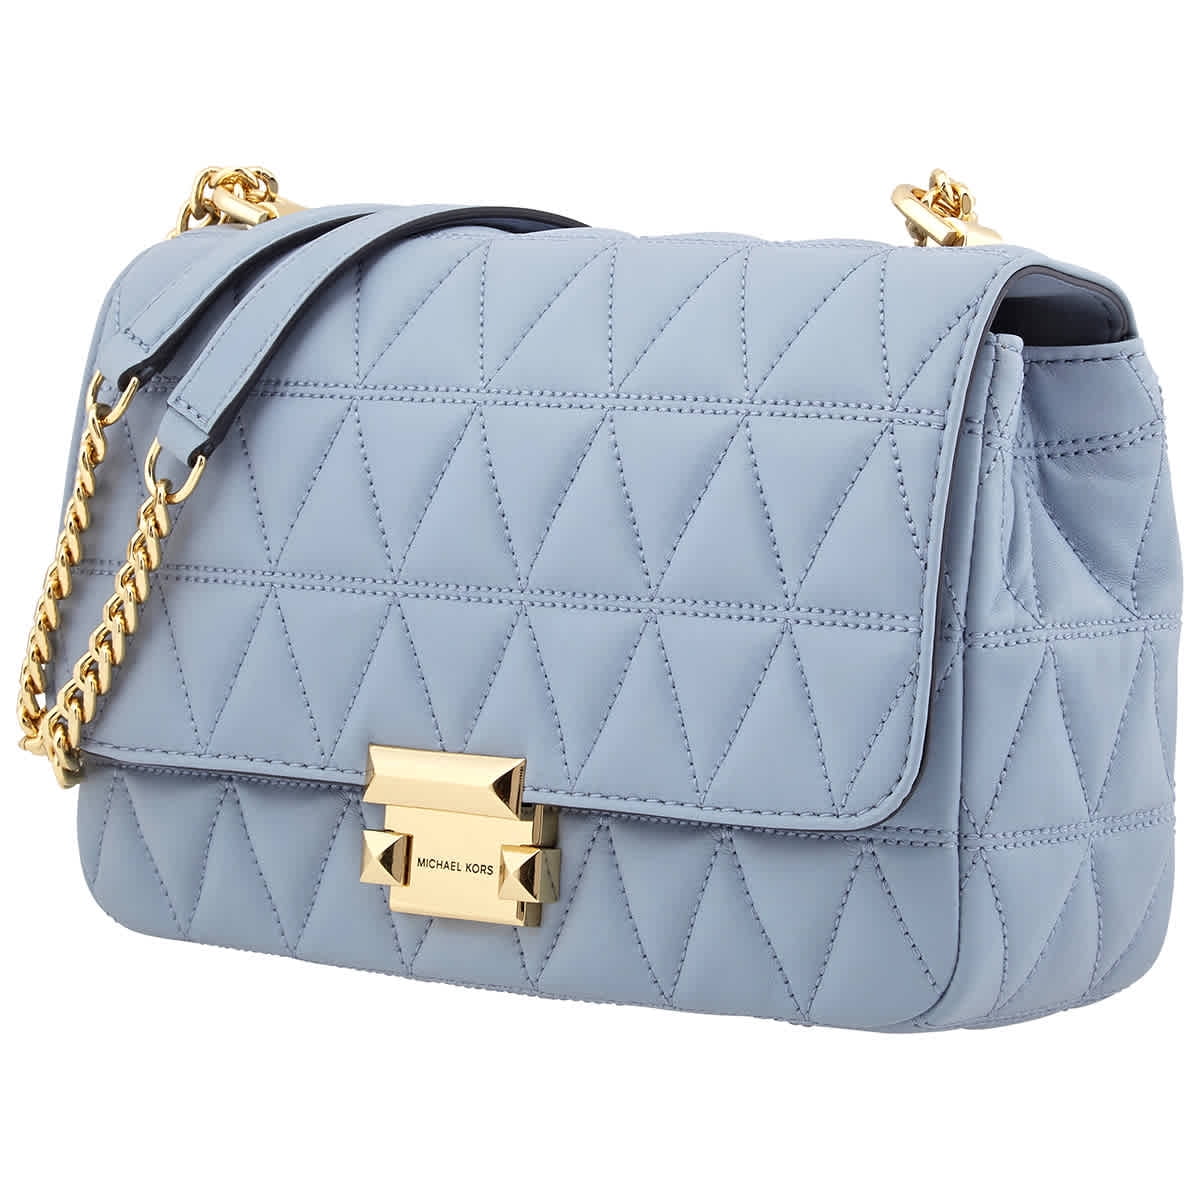 michael kors pale blue purse